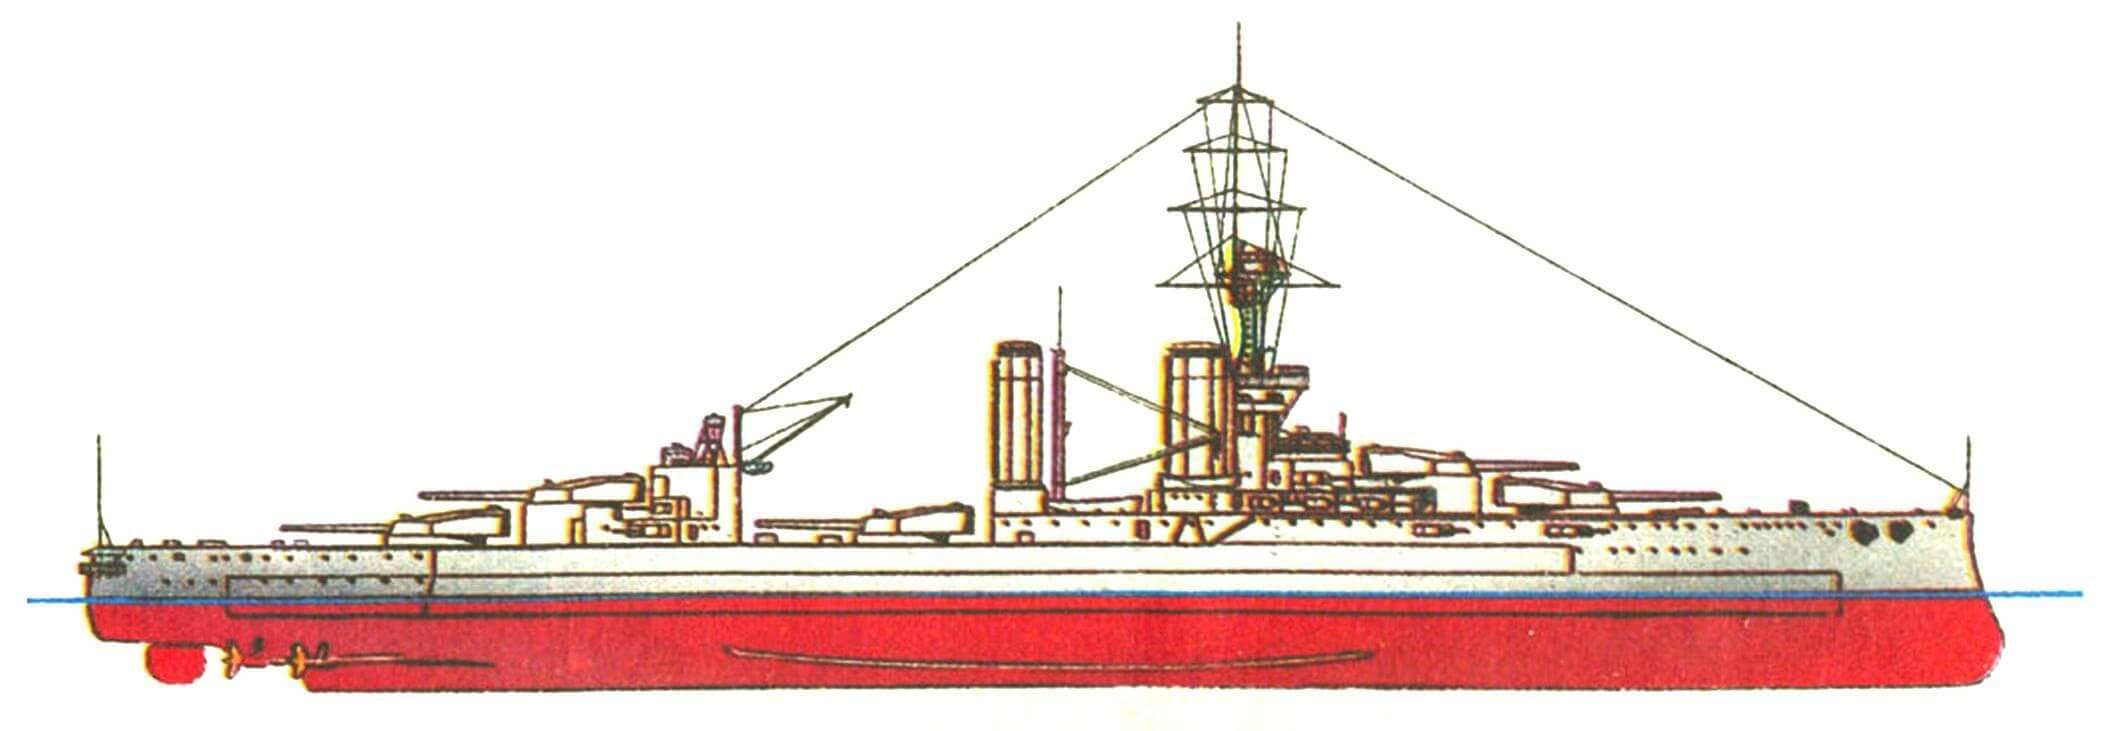 172.Линейный корабль «КИНГ ДЖОРДЖ V», Англия, 1912 г. Заложен и спущен на воду в 1911 г. Водоизмещение нормальное 23 000 т, полное 25 700 т. Длина наибольшая 182,1 м, ширина 27,1 м, осадка 8,7 м. Мощность 4-вальной турбинной установки 31 000 л. с., скорость 21 уз. Броня и вооружение — как на «Орионе». Всего построено 4 единицы: «Кинг Джордж V», «Центурион», «Аякс» и «Одейшес» (последние три — 1913 г.).